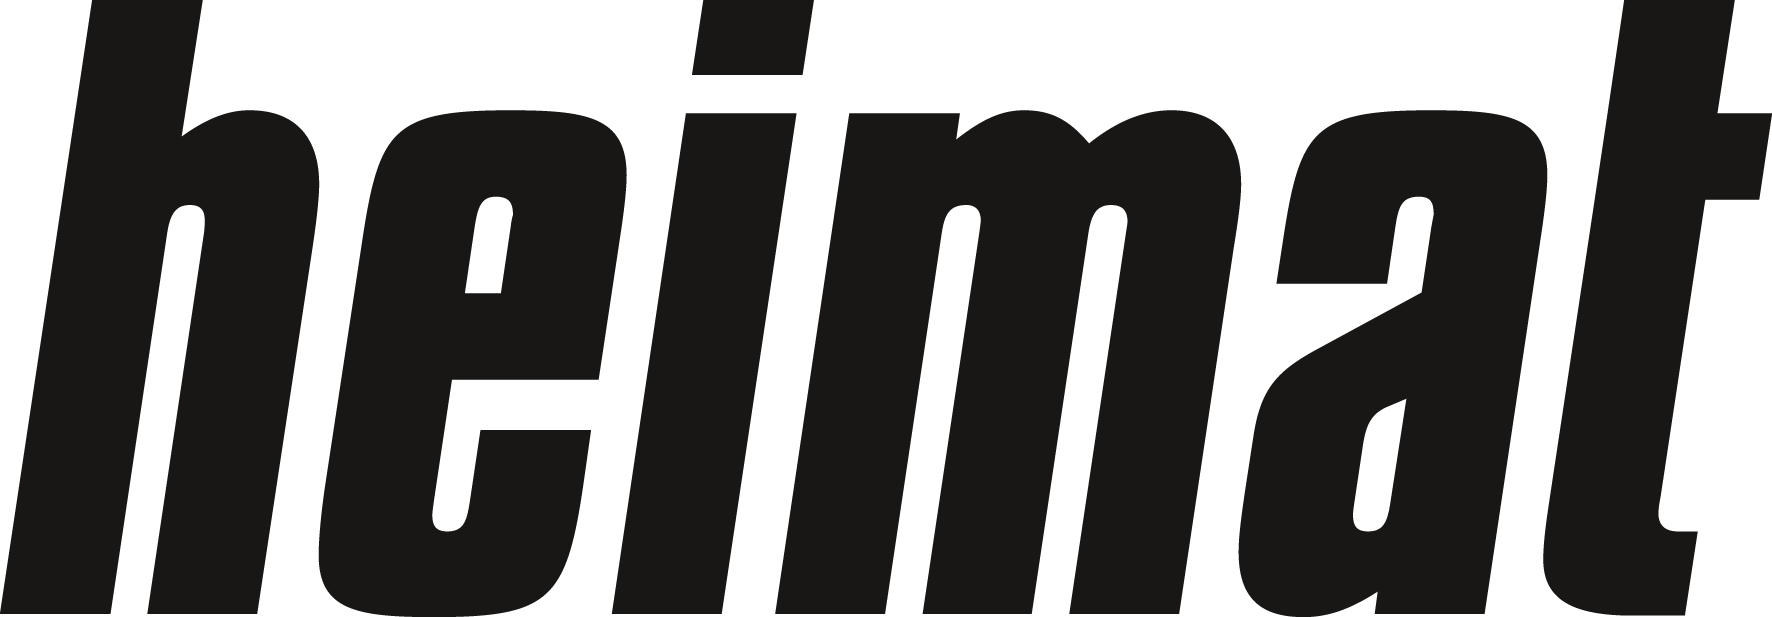 Heimat Agentur Logo